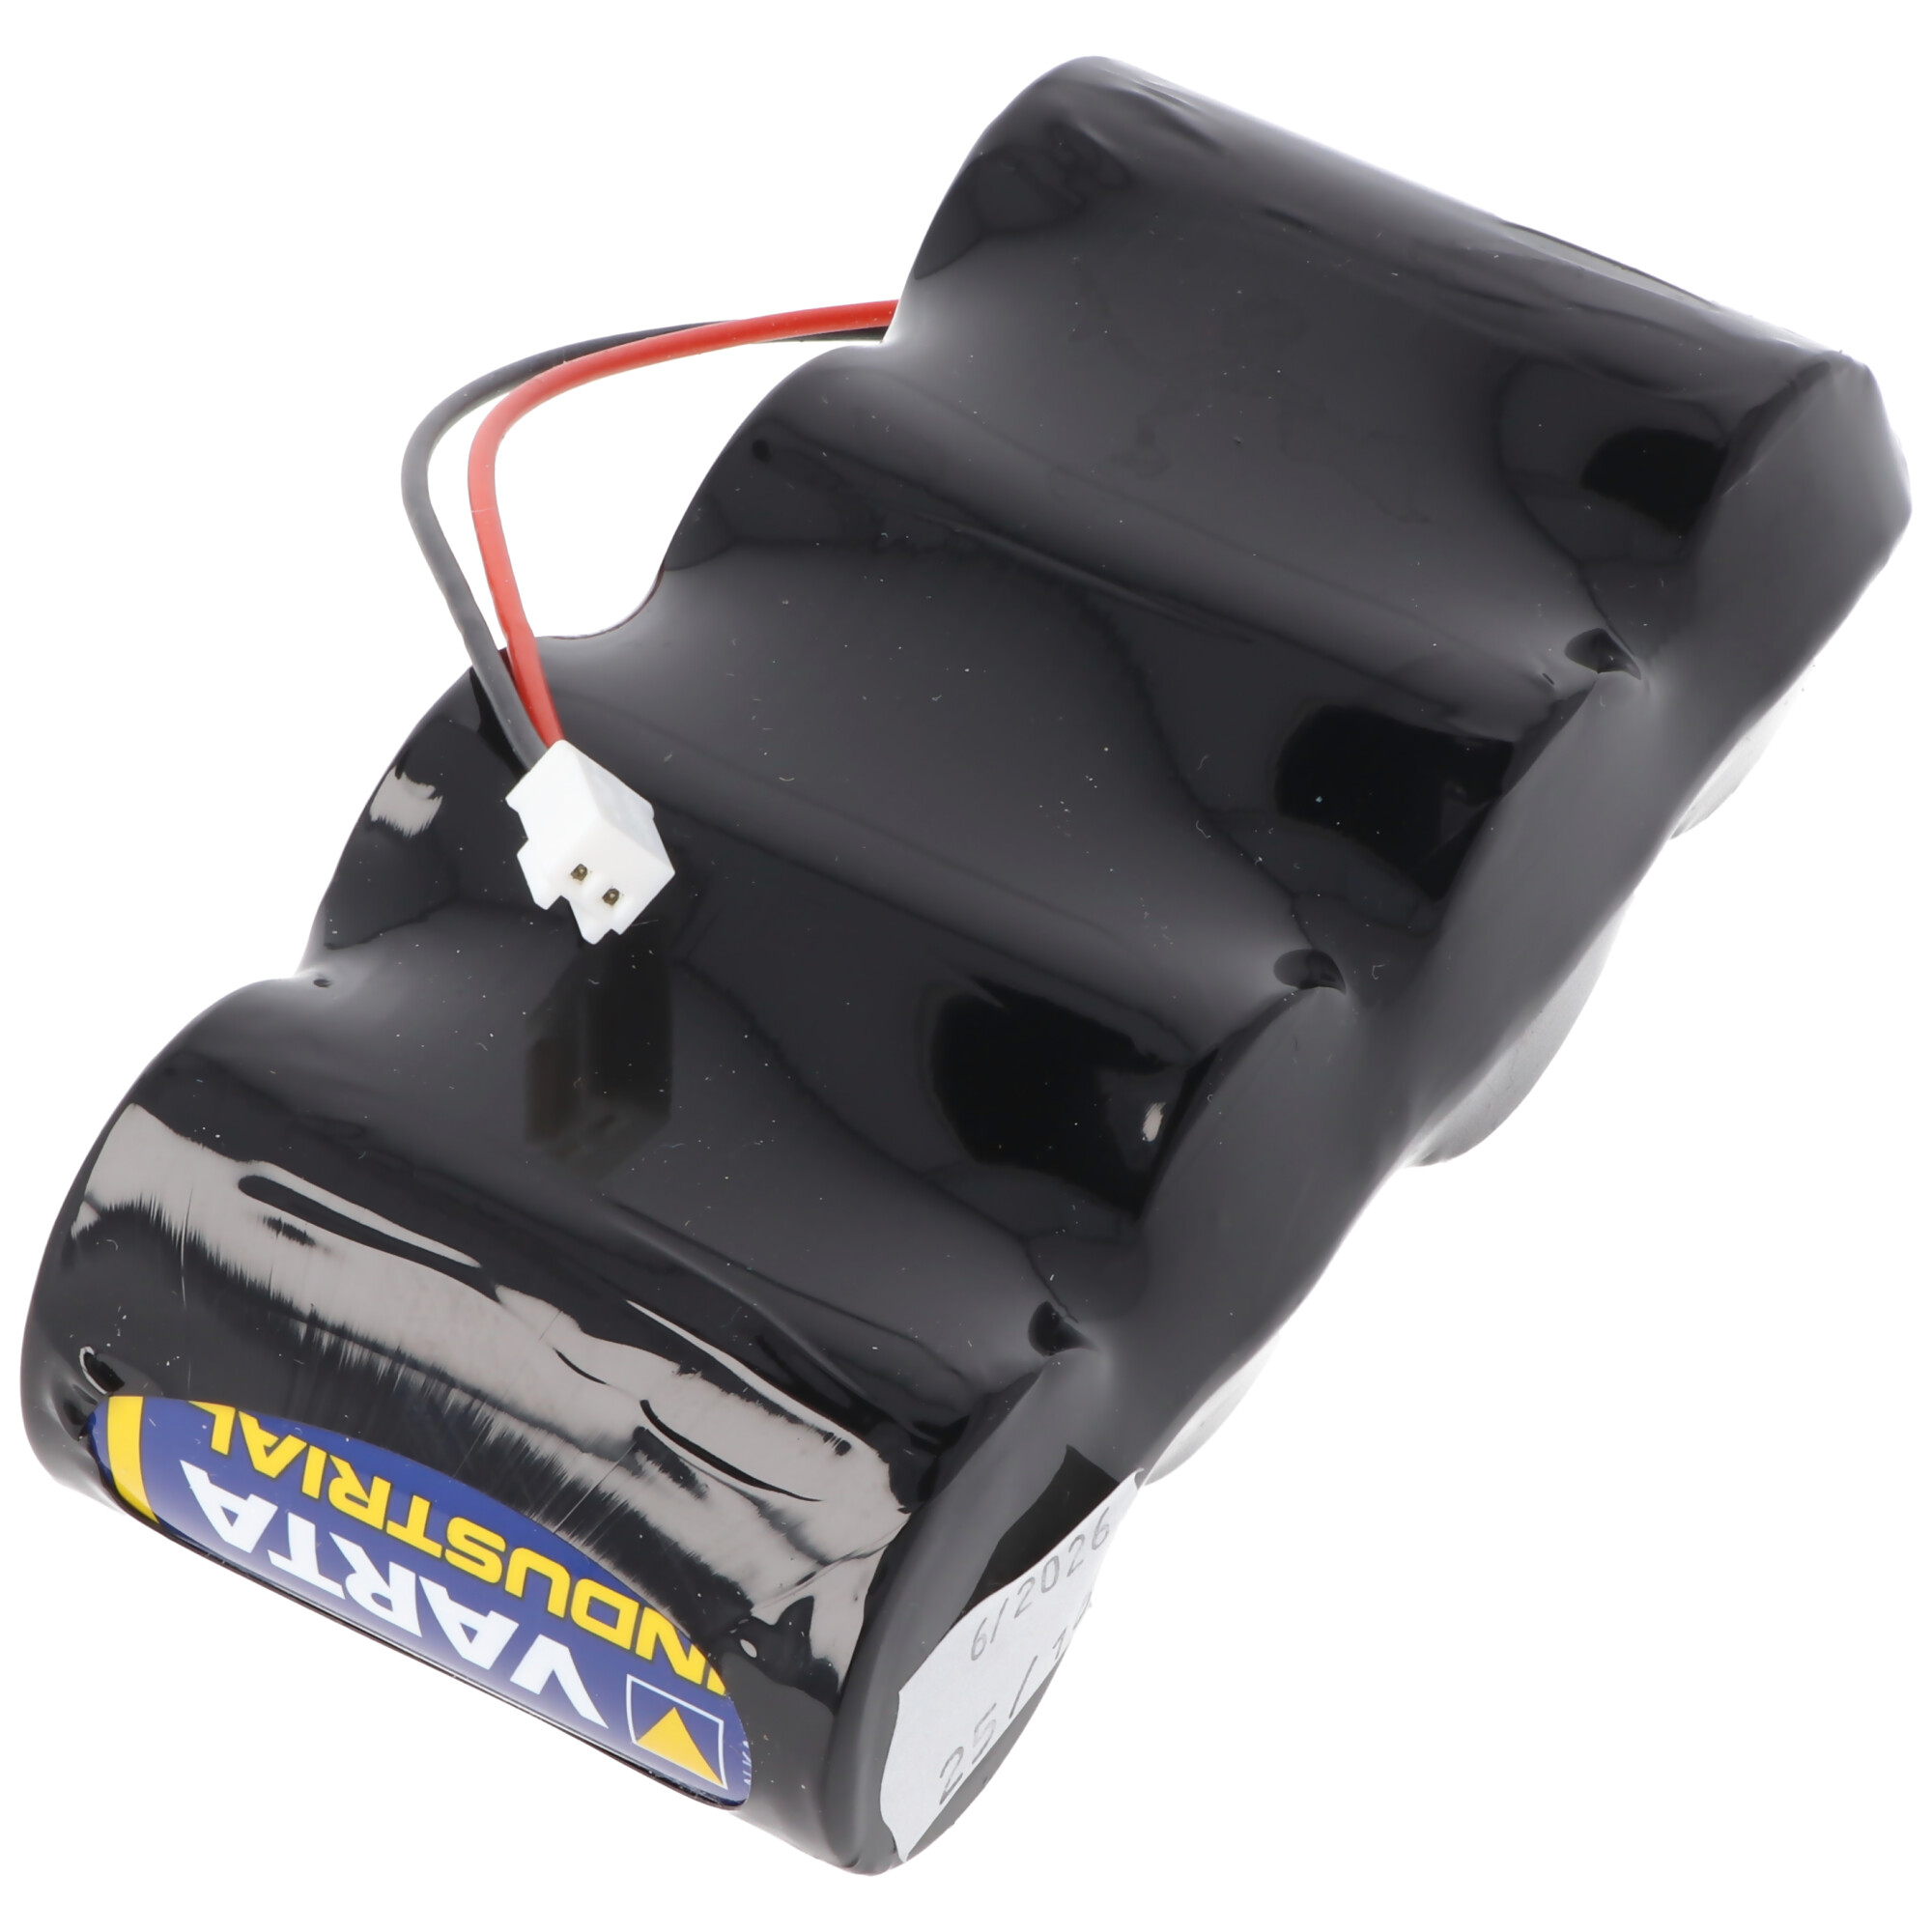 Varta Alkaline Batterie Pack 6 Volt mit Kabel und Stecker 6 Volt